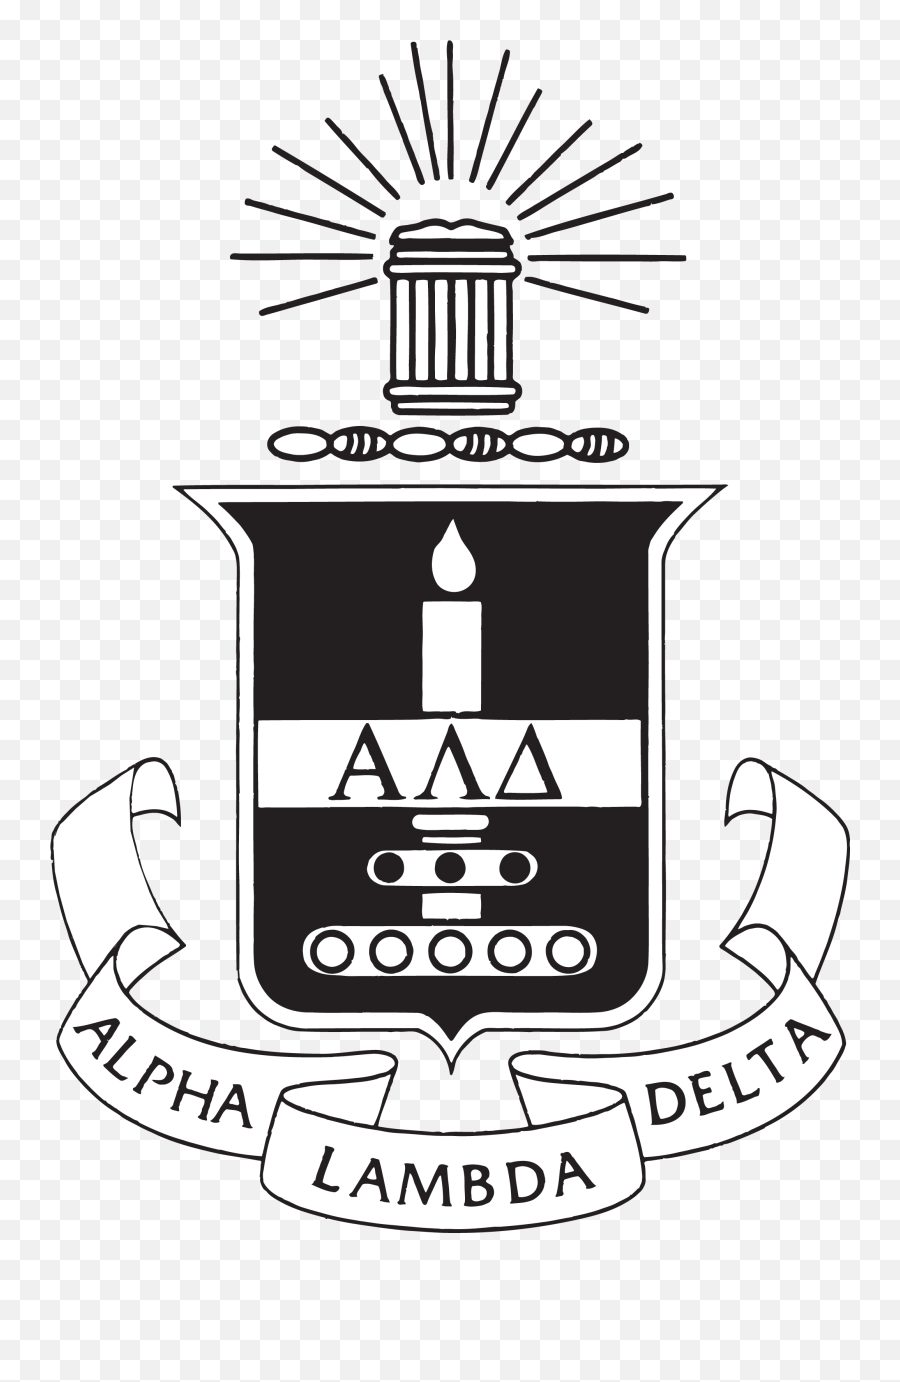 Media Kit U2014 Alpha Lambda Delta - Alpha Lambda Delta Logo Png,Crest Png